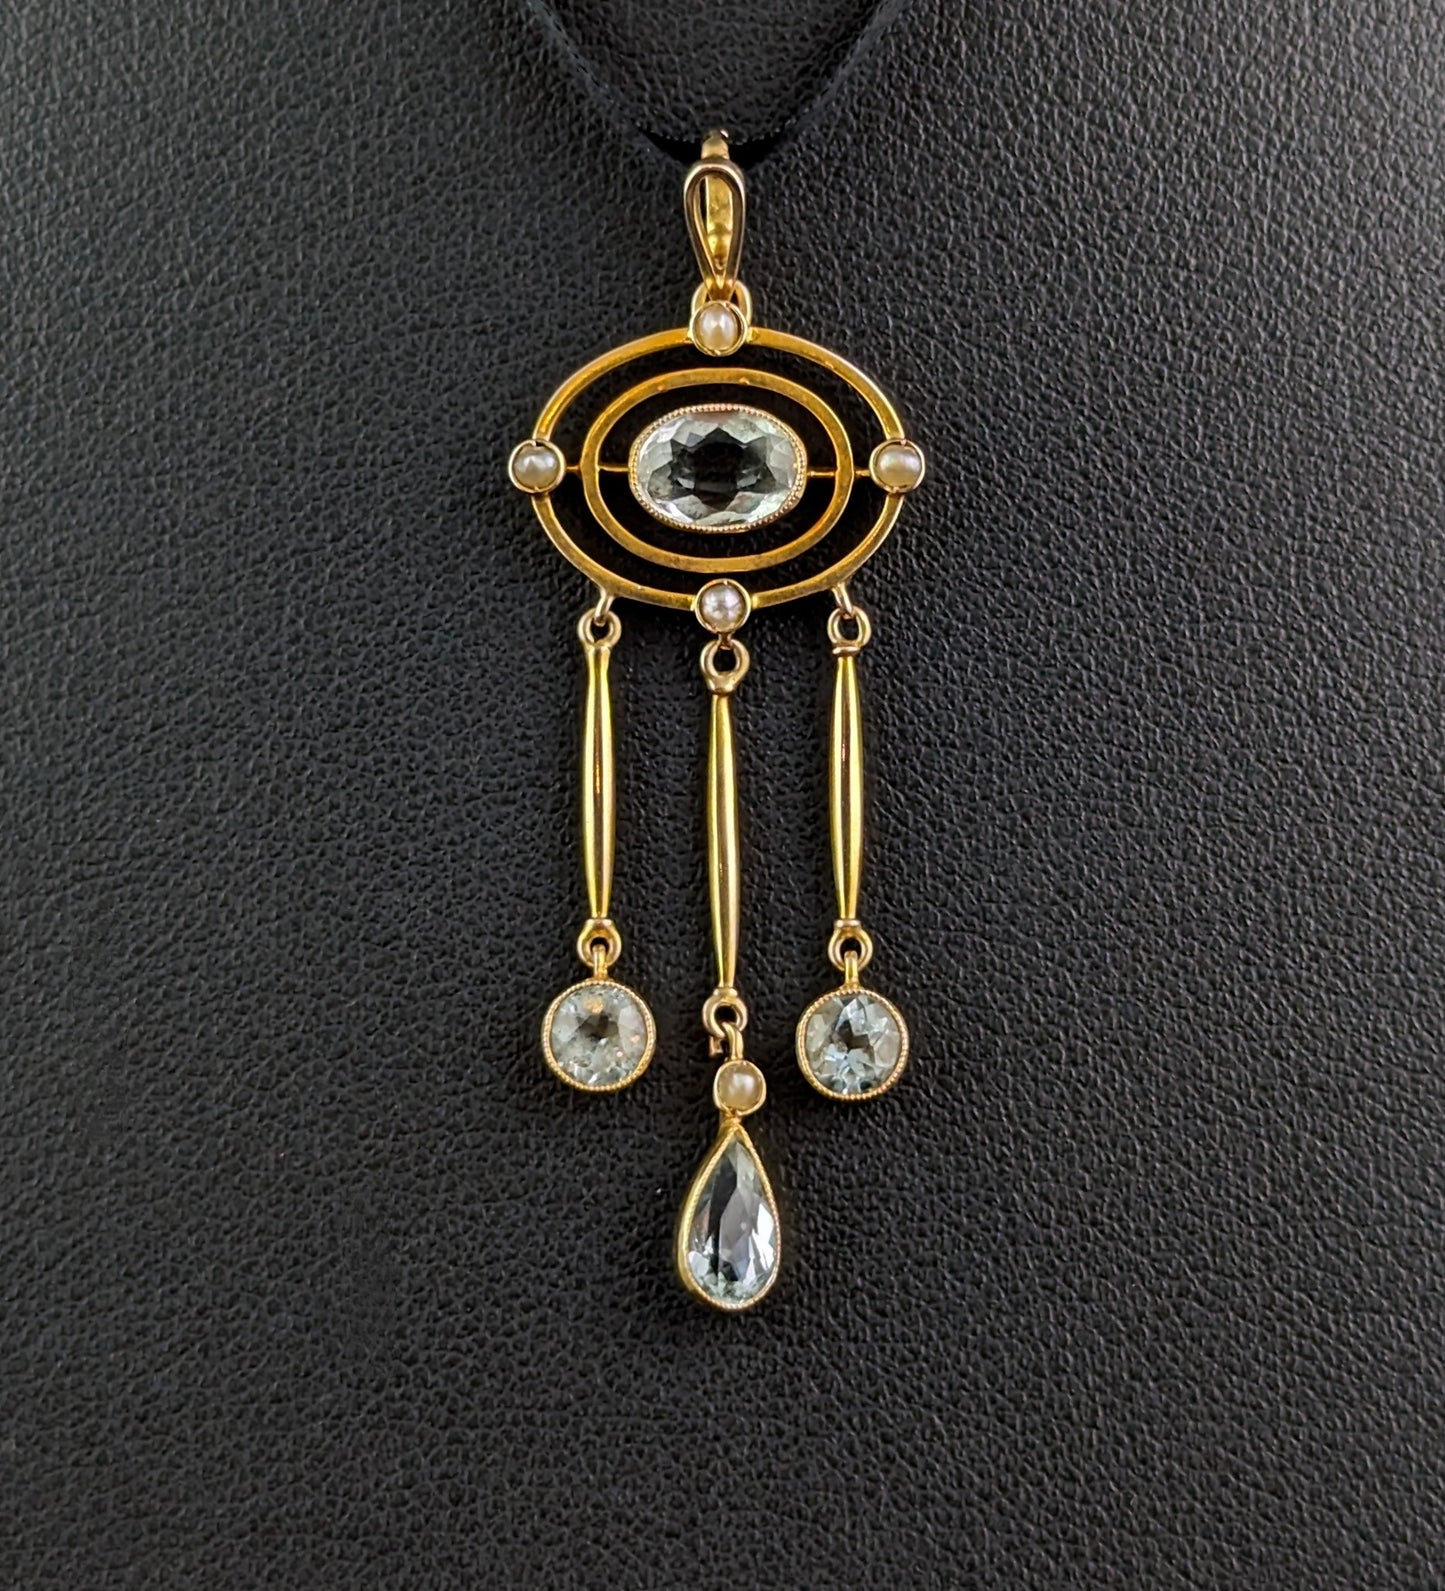 Antique Aquamarine triple drop pendant, 15ct gold, Pearl, Art Nouveau